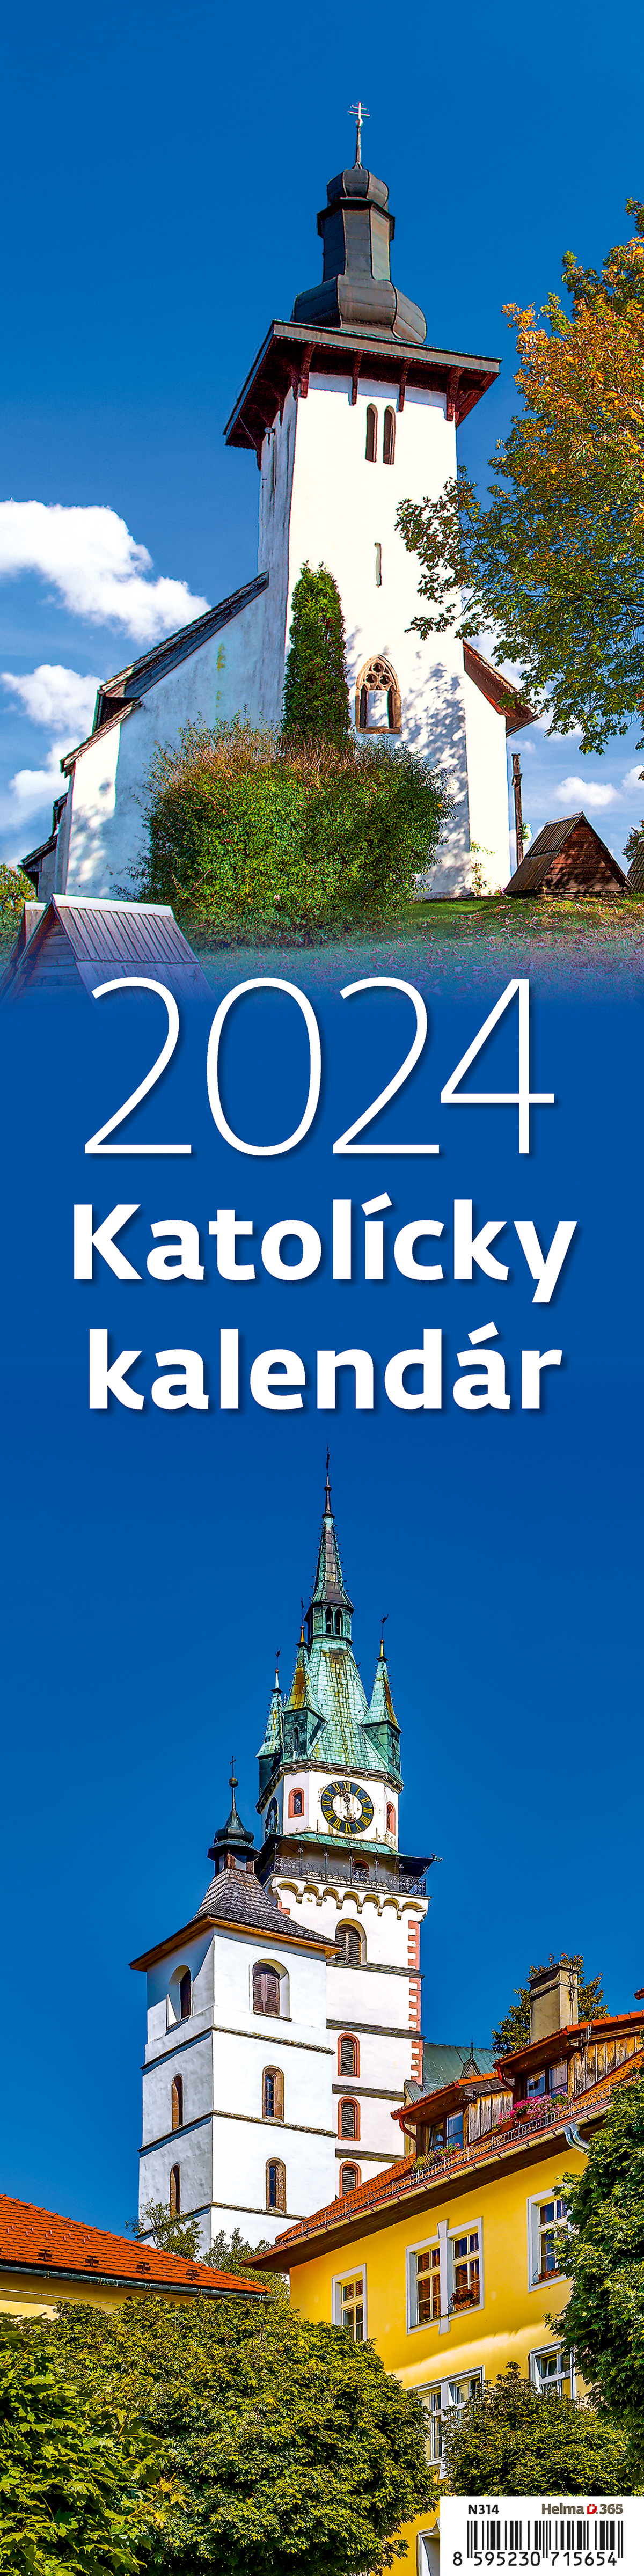 Kalendár nástenný 2024 Katolícky  viazanka N314